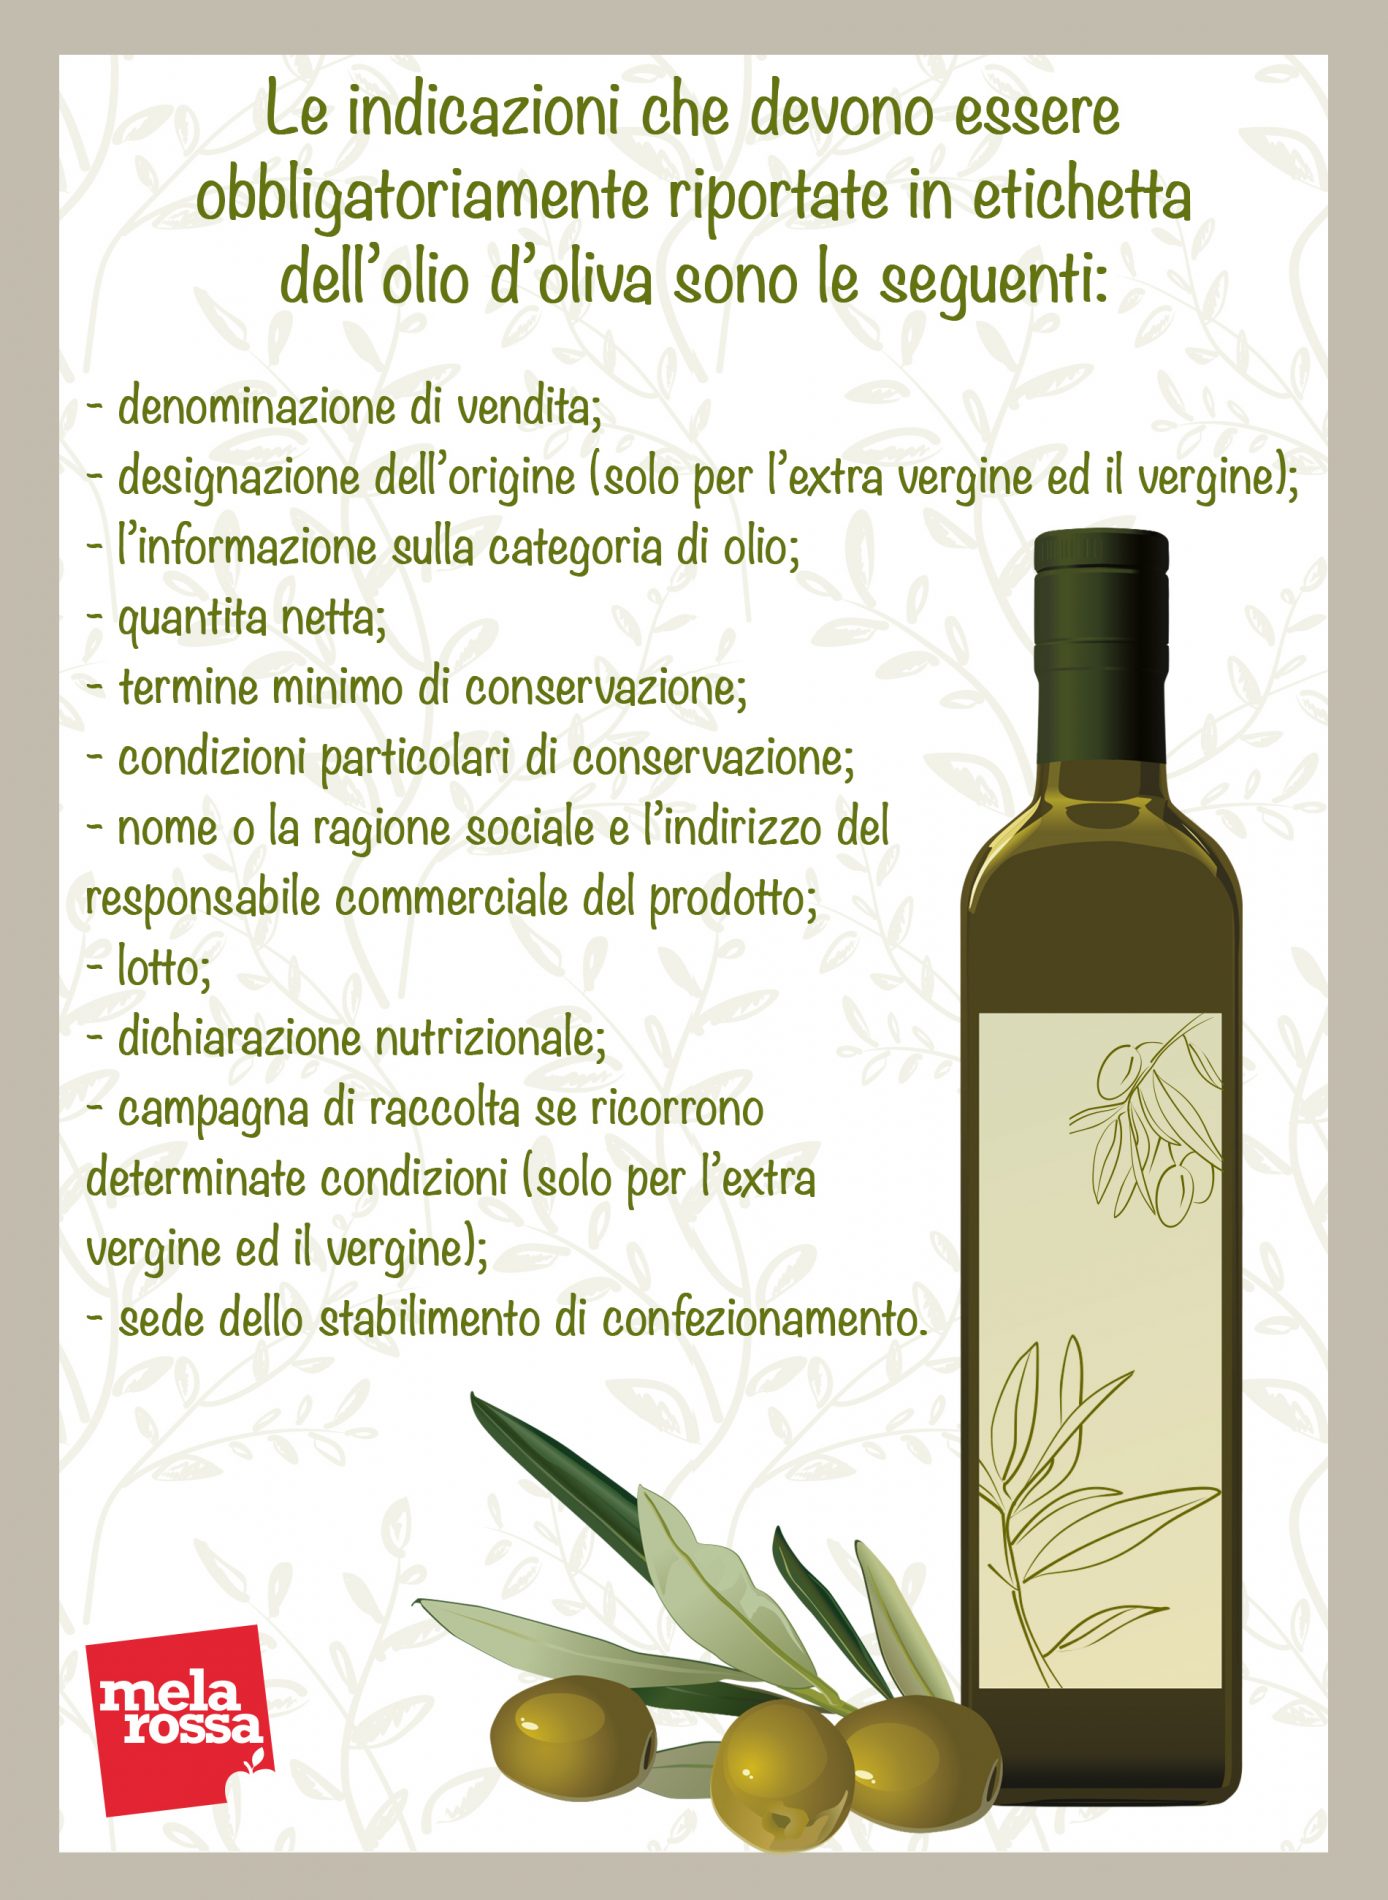 olio d'oliva: etichettatura